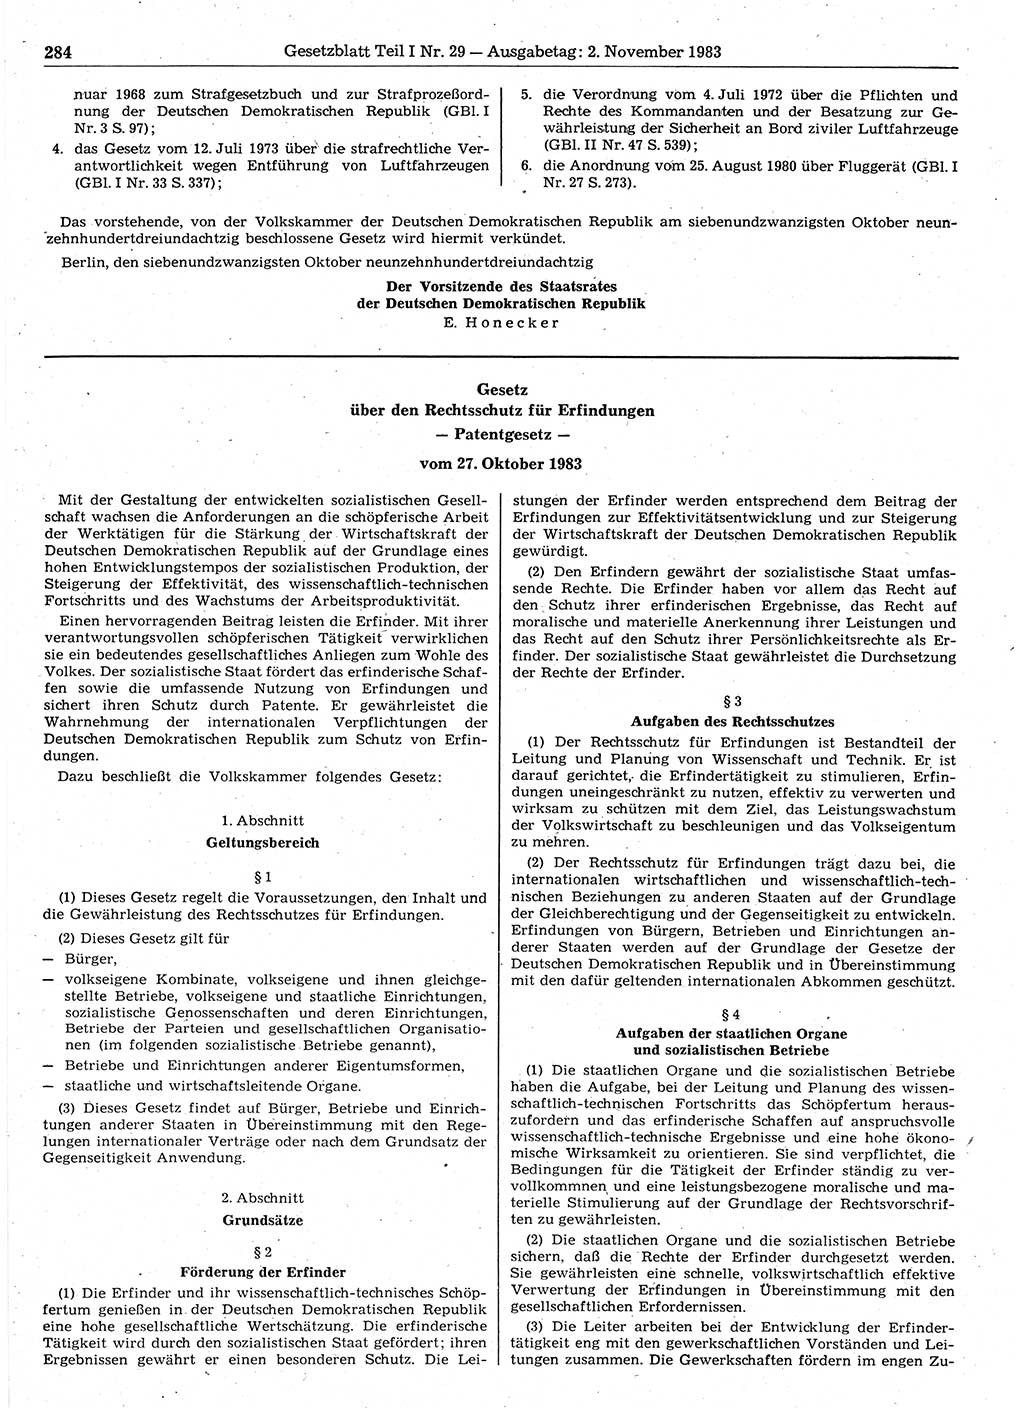 Gesetzblatt (GBl.) der Deutschen Demokratischen Republik (DDR) Teil Ⅰ 1983, Seite 284 (GBl. DDR Ⅰ 1983, S. 284)